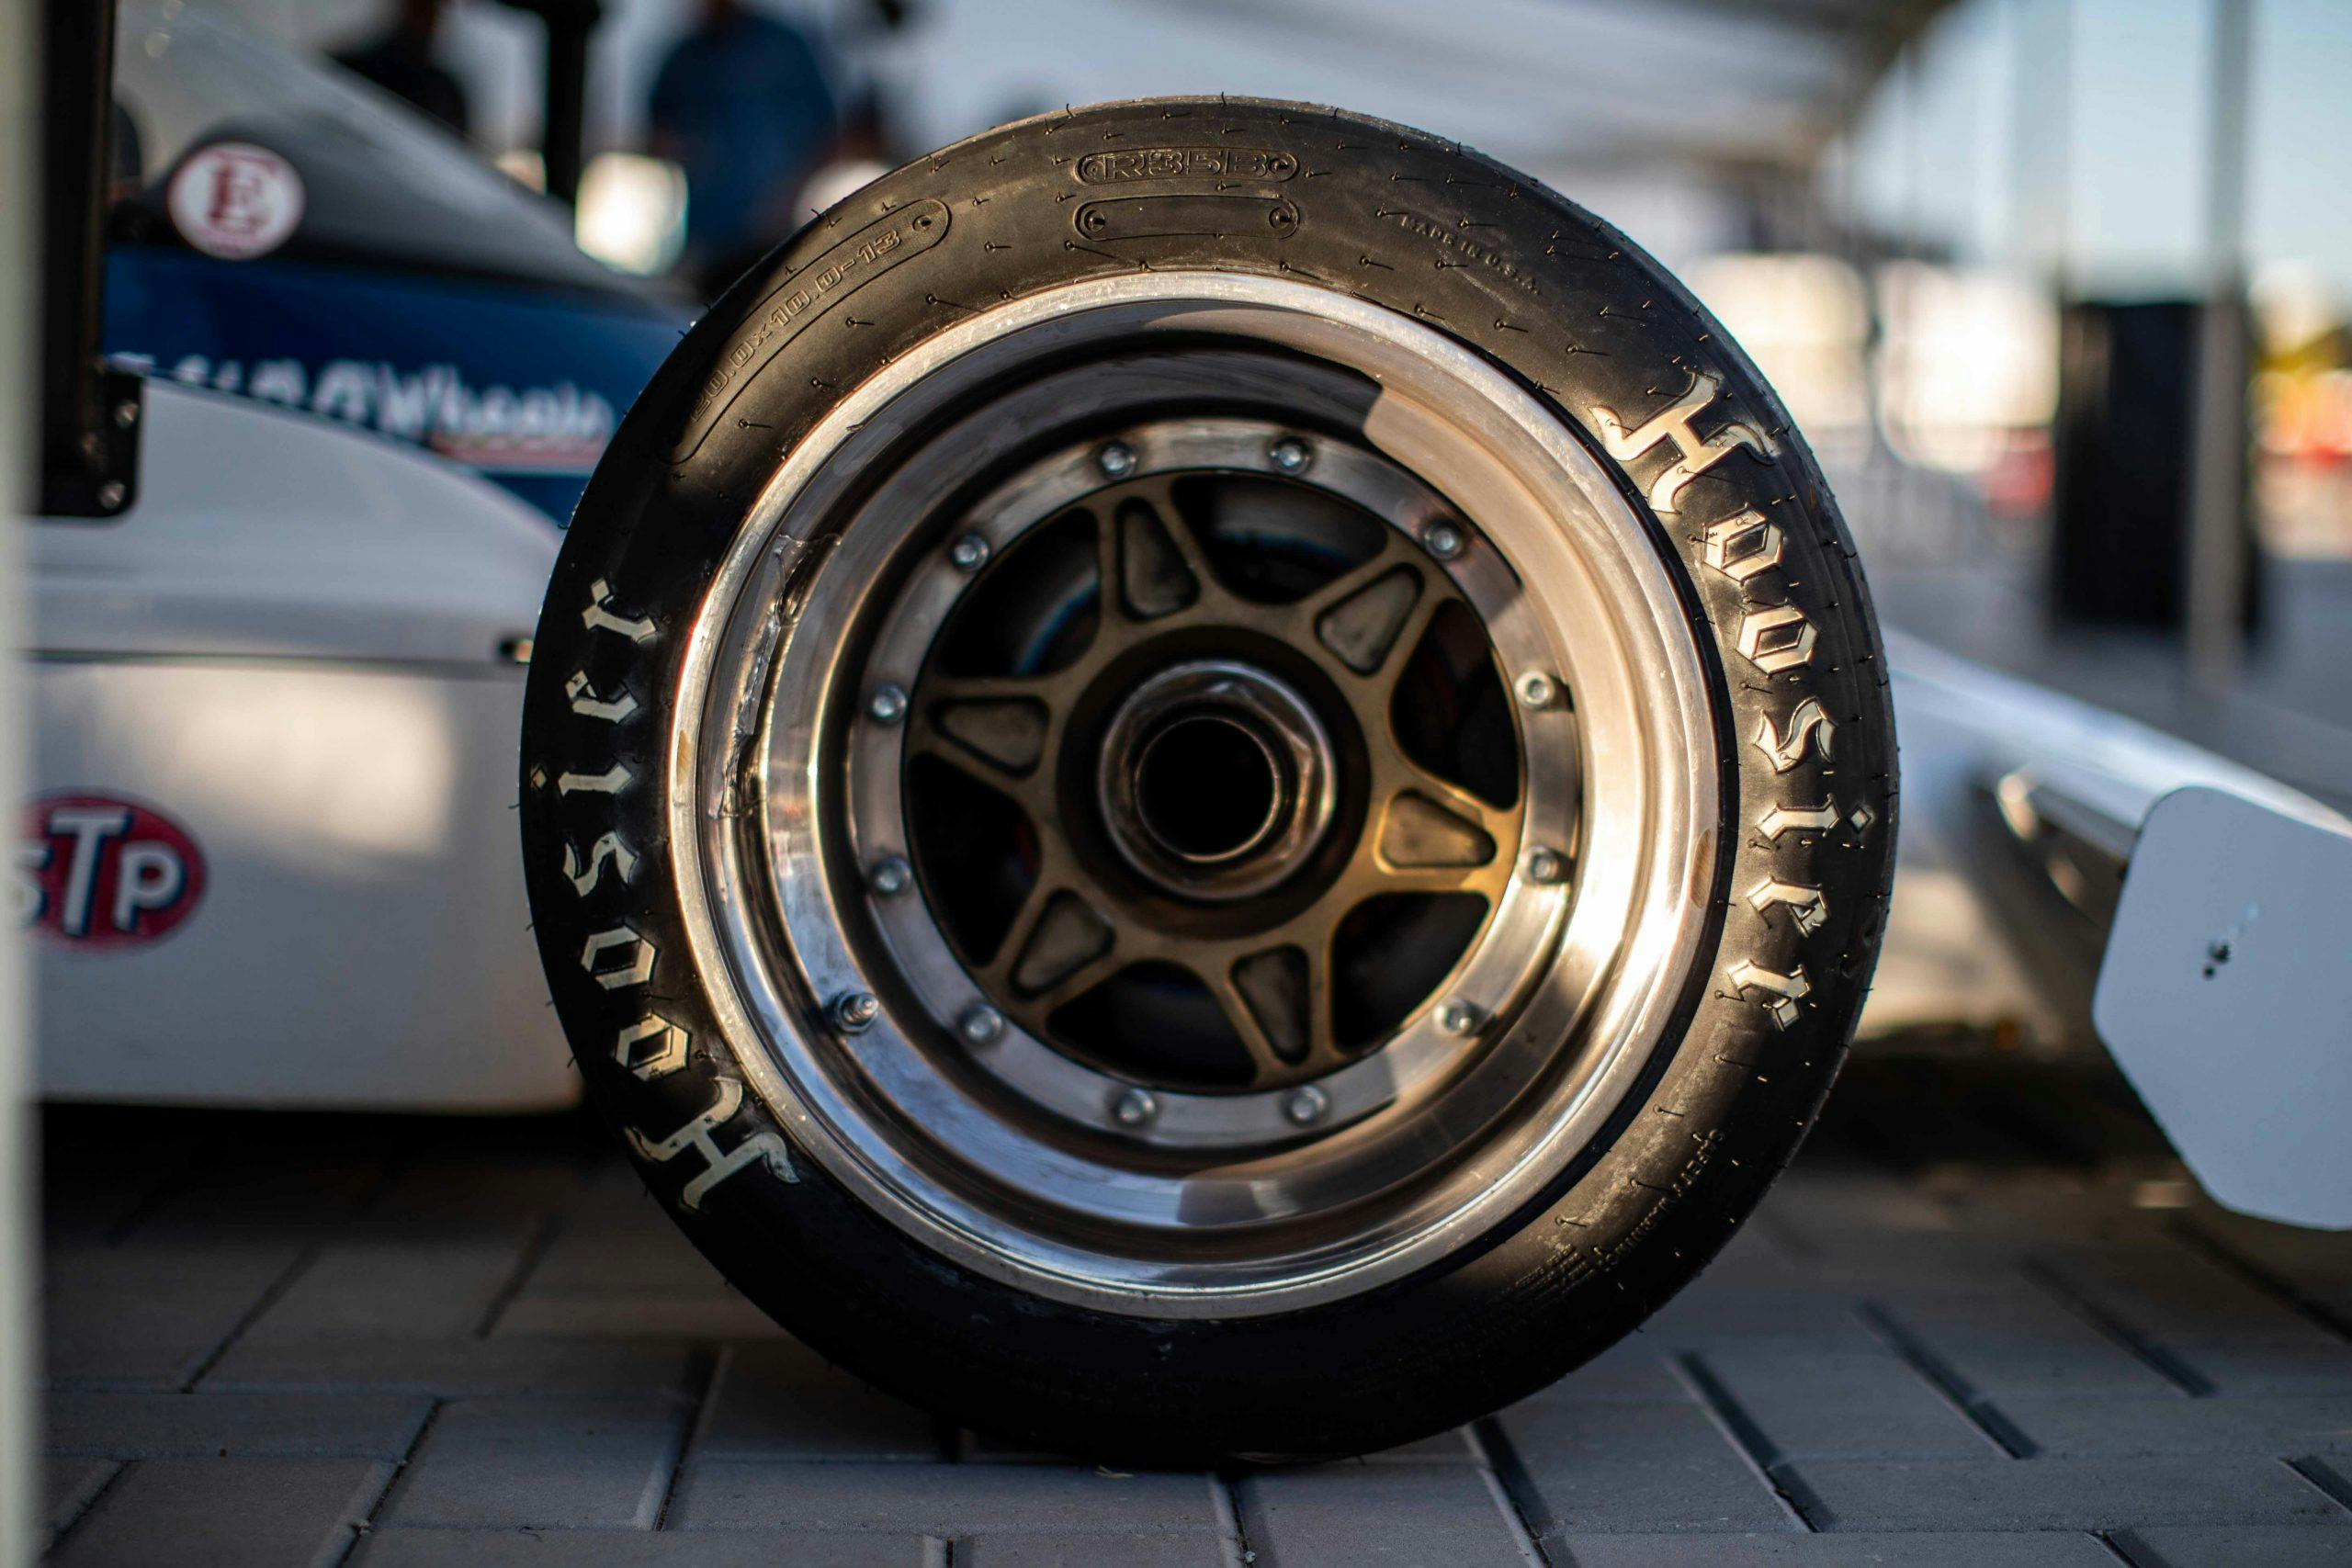 Hoosier racing tire